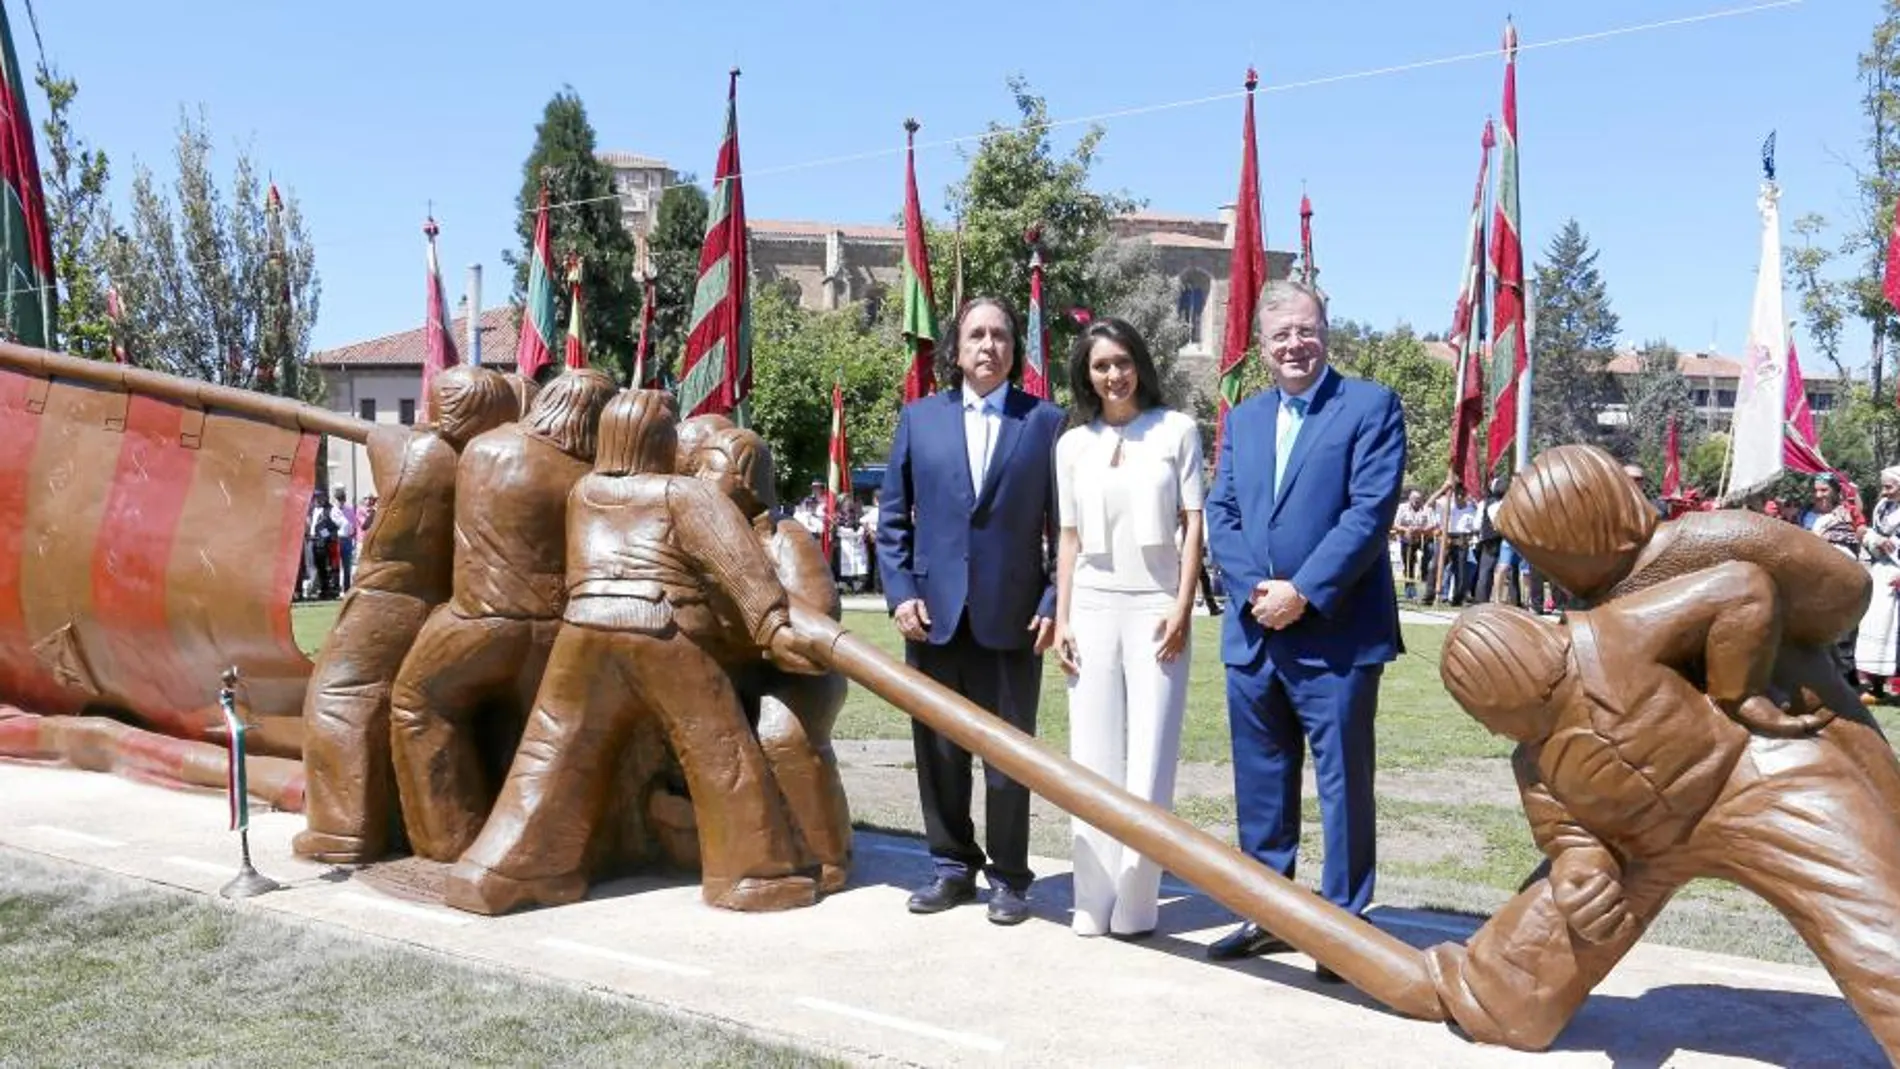 El alcalde de León, Antonio Silván, Jeanette Dayana y Daniel Chávez Morán posan junto al monumento al Pendón leonés